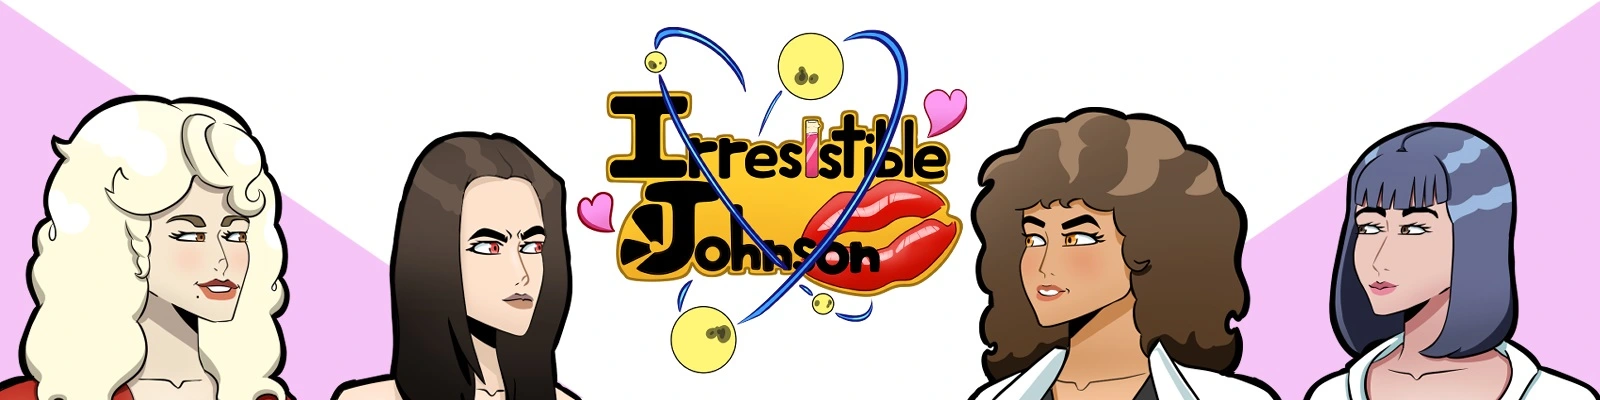 Irresistible Johnson [v0.01] main image